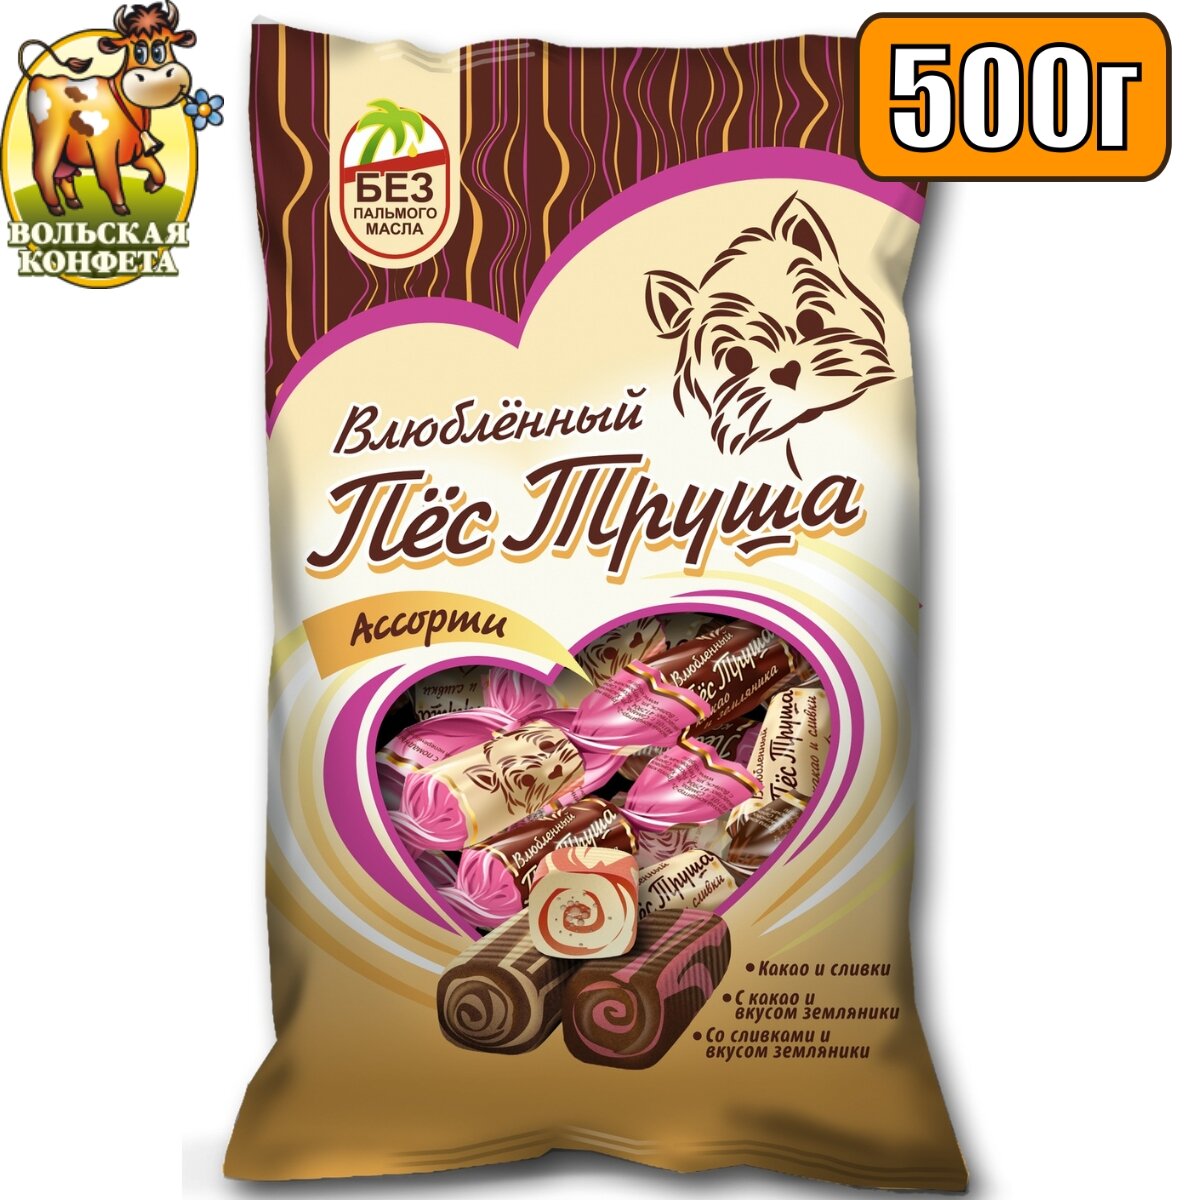 Конфеты влюбленный ПЕС труша Ассорти 500 гр , со вкусами: какао, сливки, земляника , Вольский кондитер